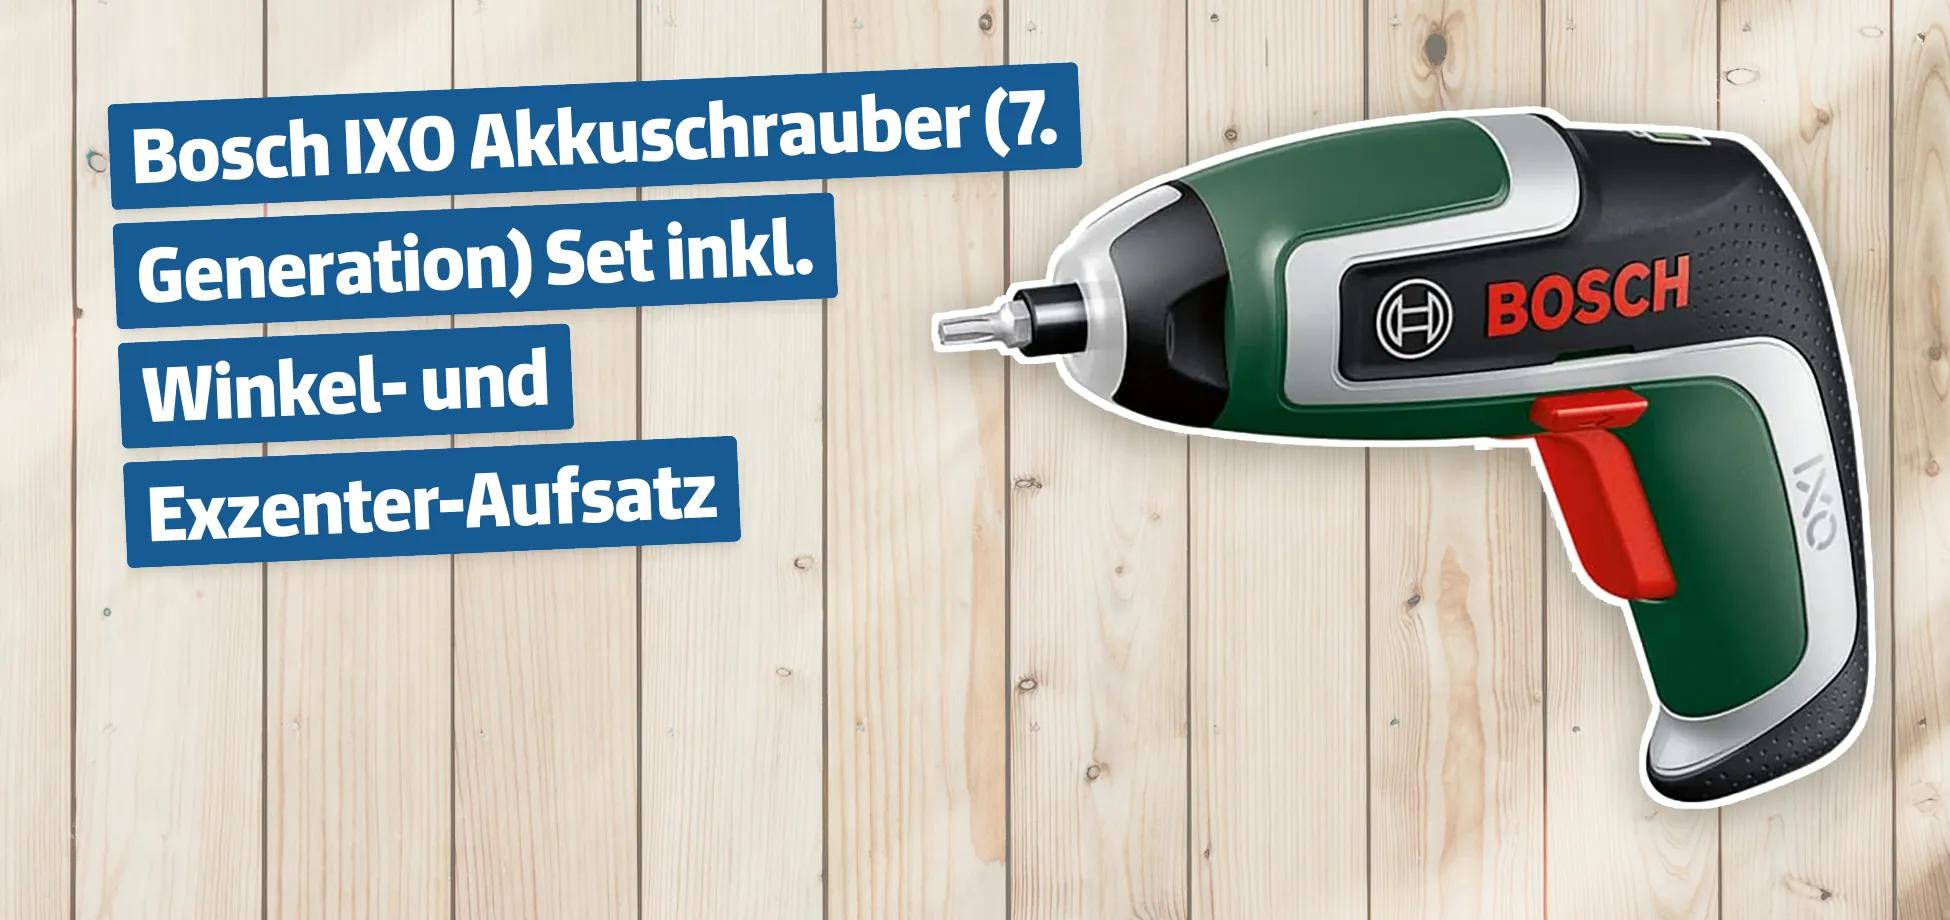 Bosch IXO Akkuschrauber 7. Generation - Set inkl. Winkel- und Exzenter-Aufsatz